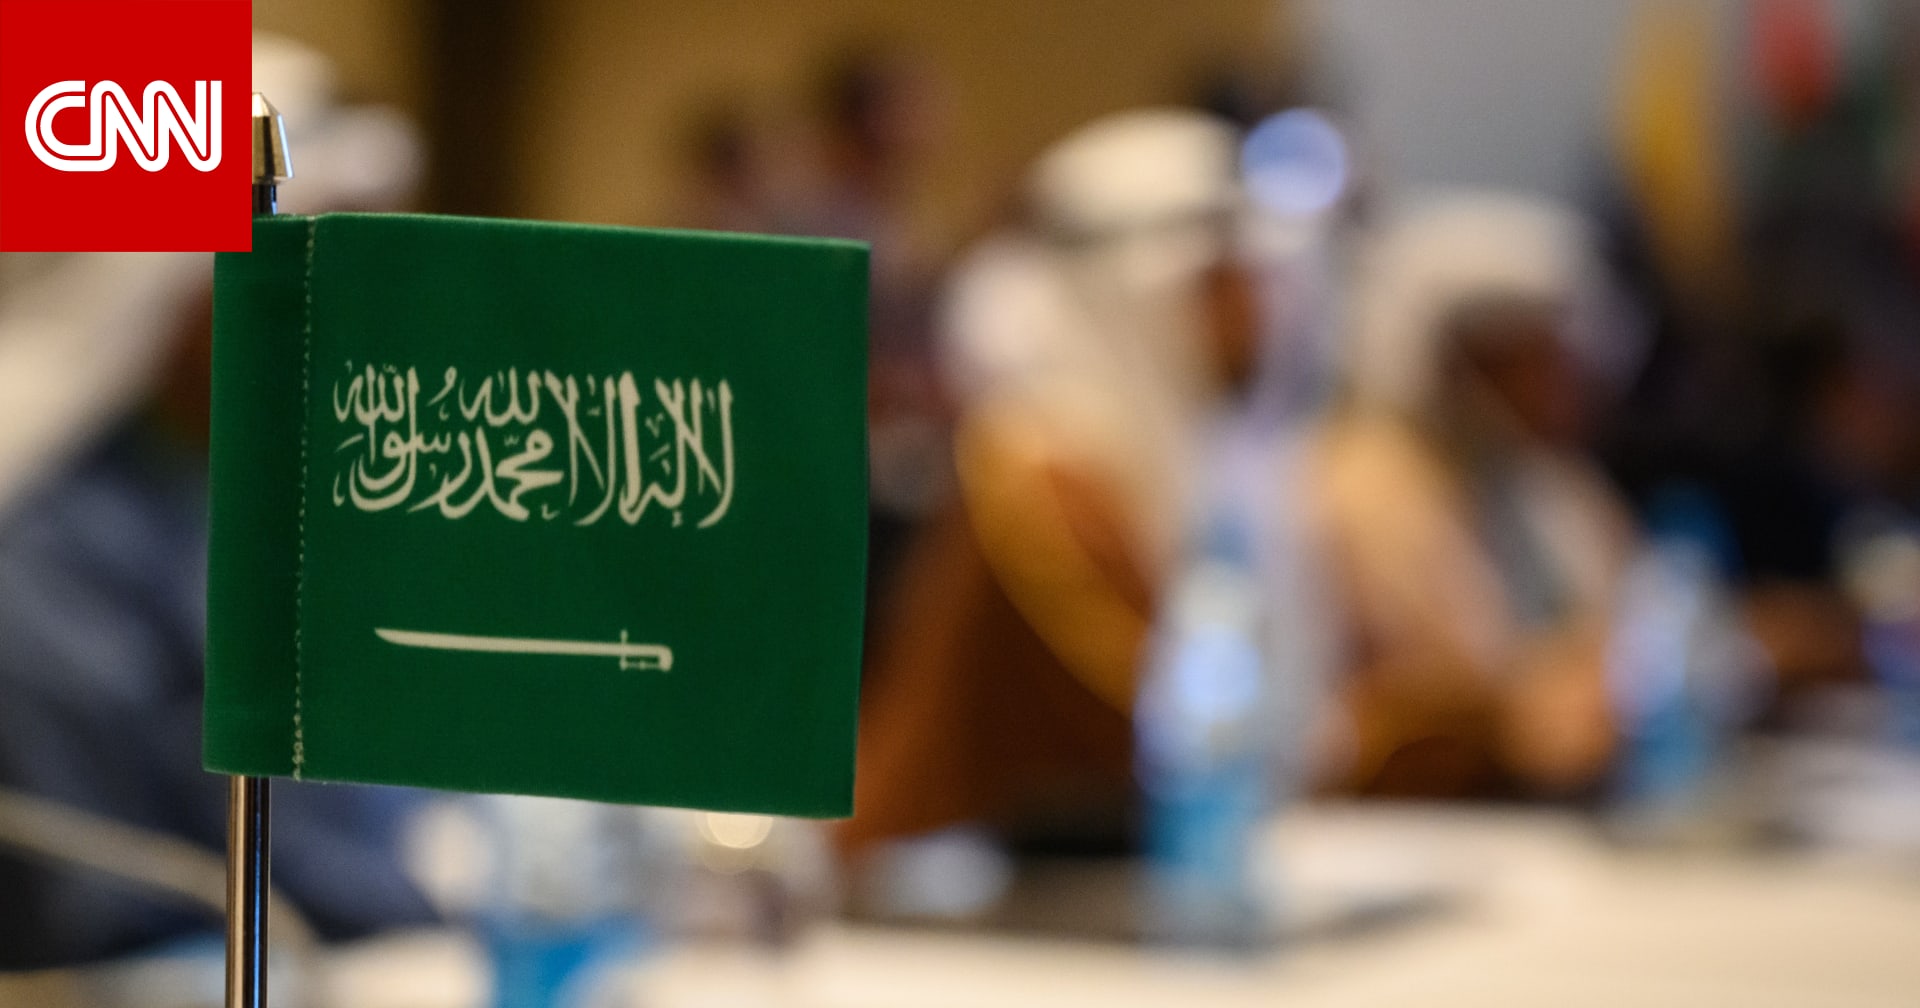 السعودية تؤجل قمتين دوليتين بسبب فيروس كورونا - CNN Arabic